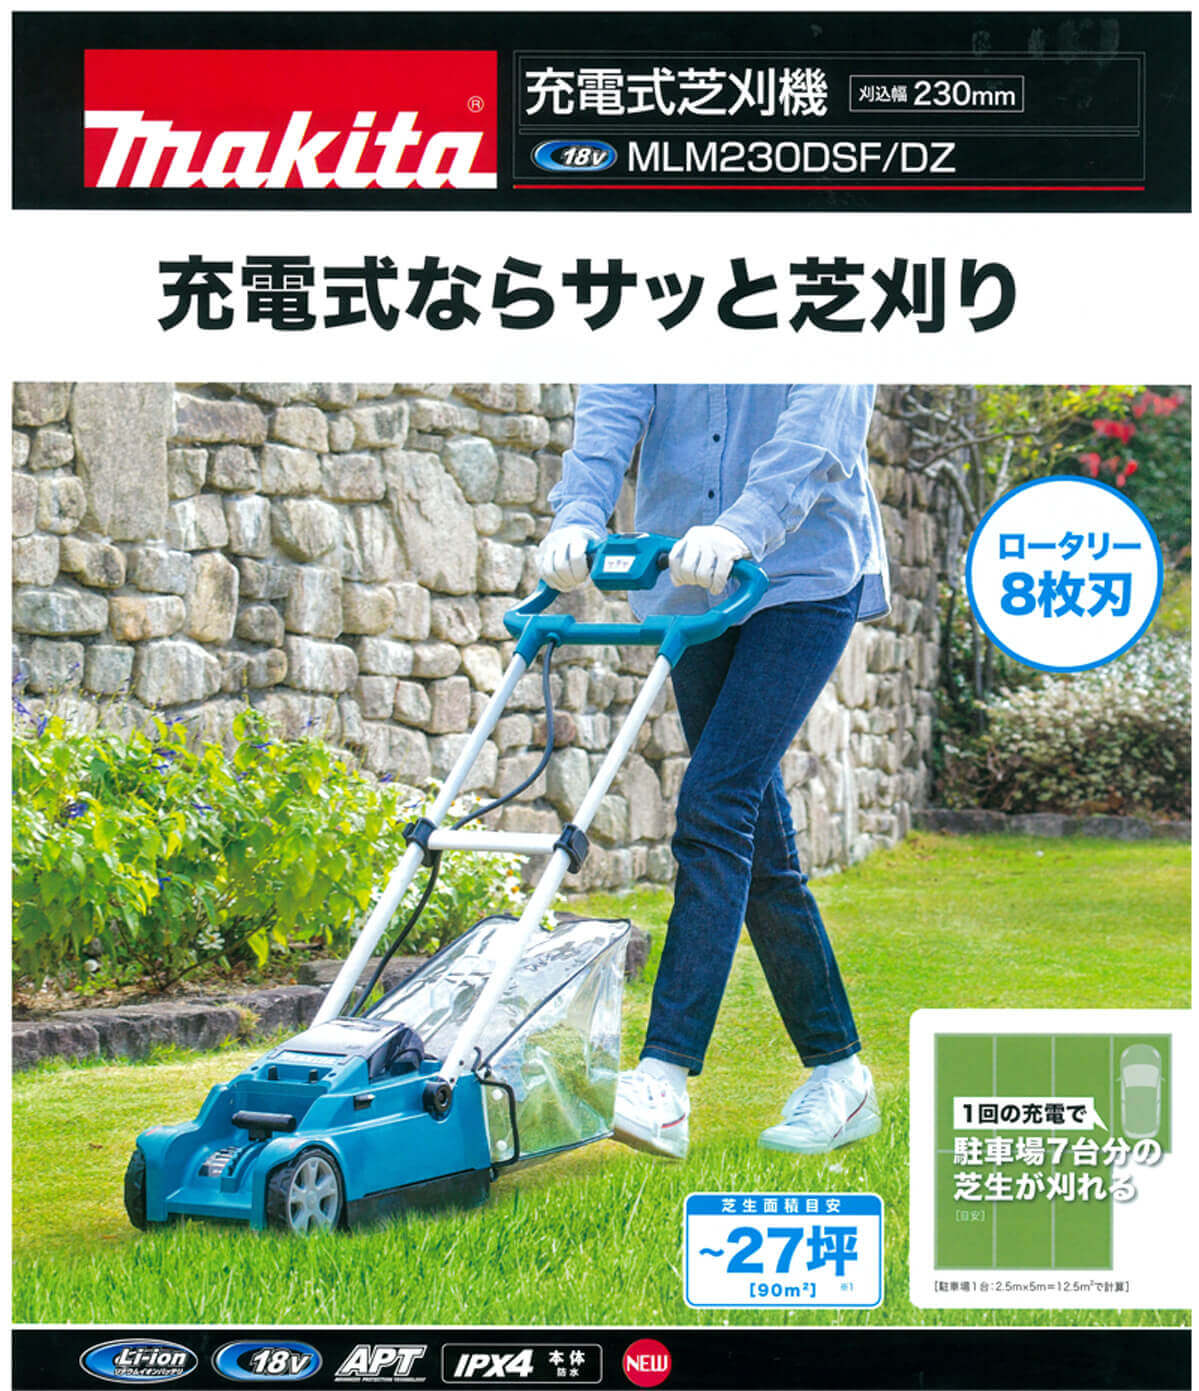 マキタ マキタ (マキタ) 充電式芝刈機 MLM432DZ 本体のみ ロータリー式